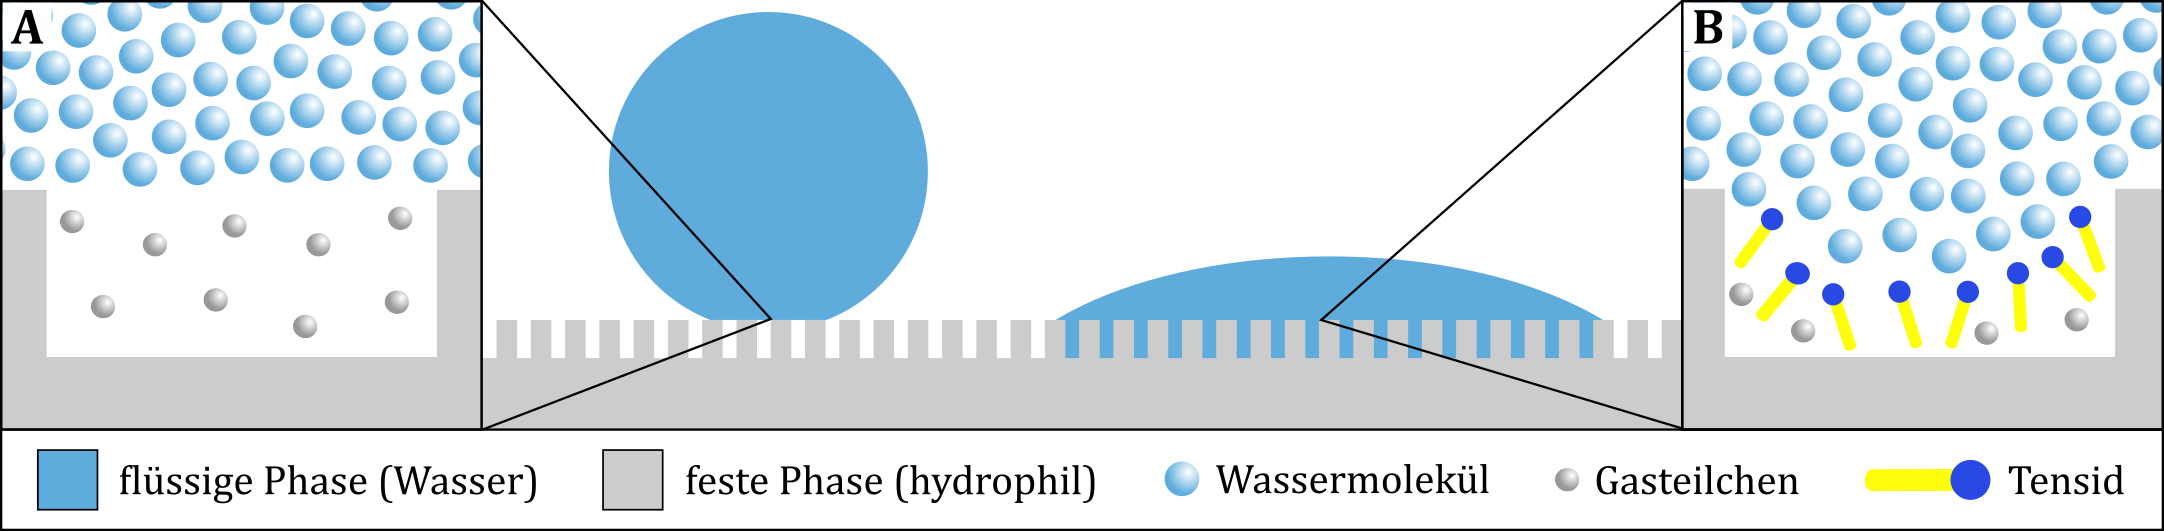 Die Benetzbarkeit einer rauen hydrophilen Oberfläche kann durch Lufteinschlüsse (A) herabgesetzt werden. Die Zugabe von Tensiden führt hingegen zu einer Erhöhung der Benetzbarkeit (B). 